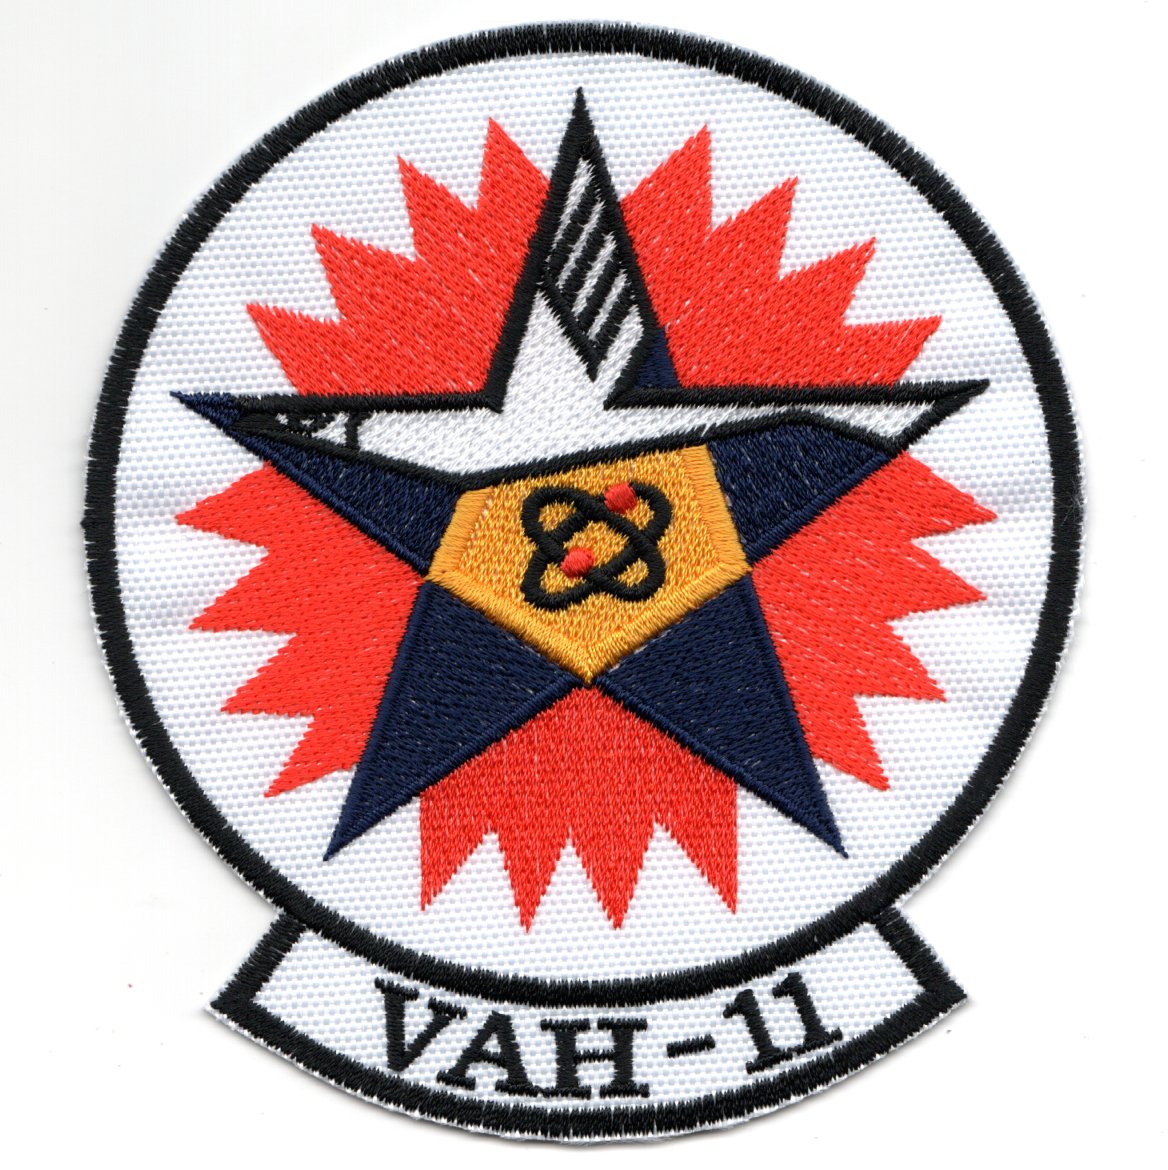 VAH-11 Squadron Patch (Repro)